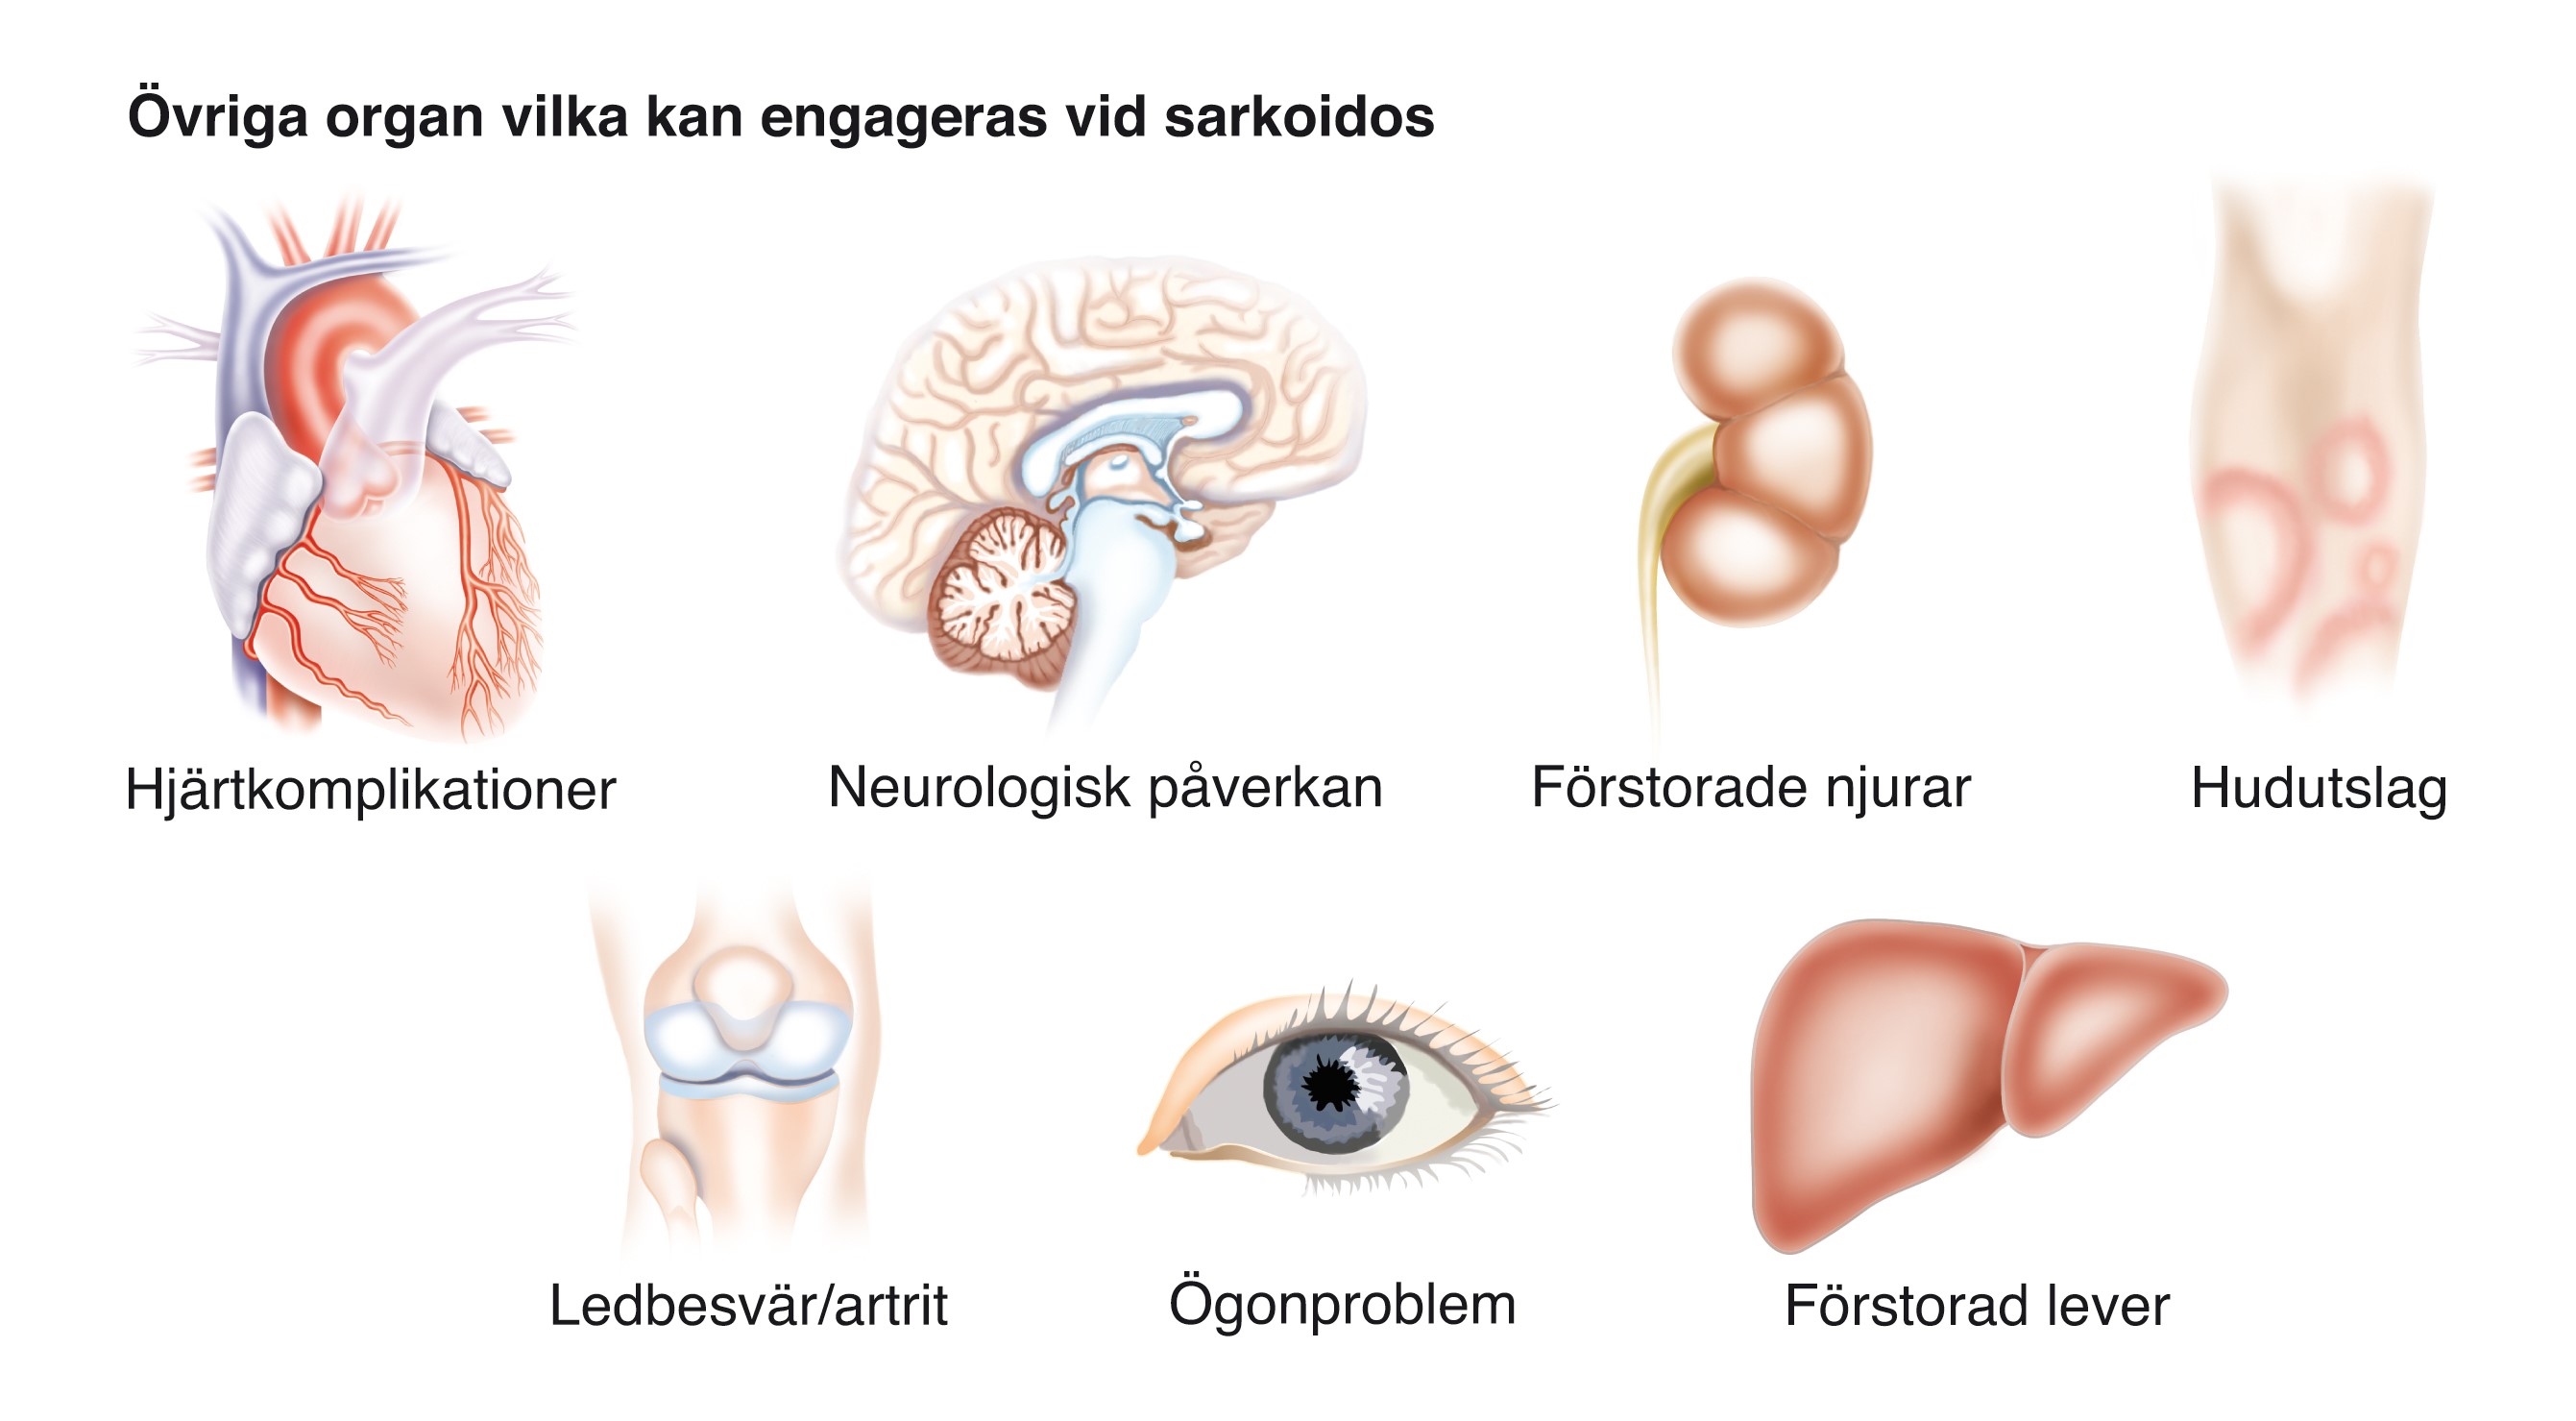 organ som kan drabbas av sarkoidos.